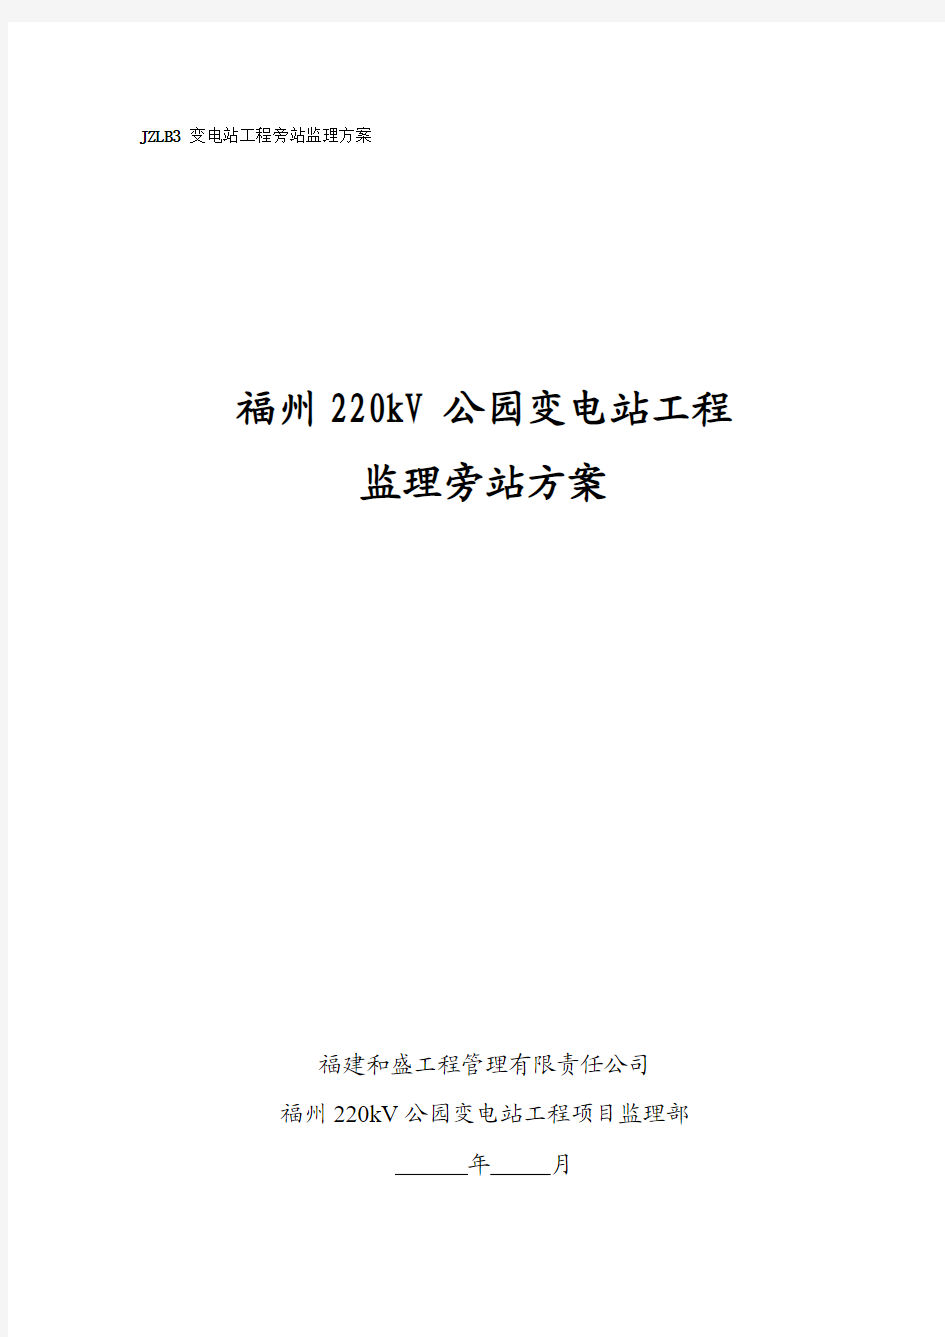 福州220kV公园变电站工程监理旁站方案(2013.11)